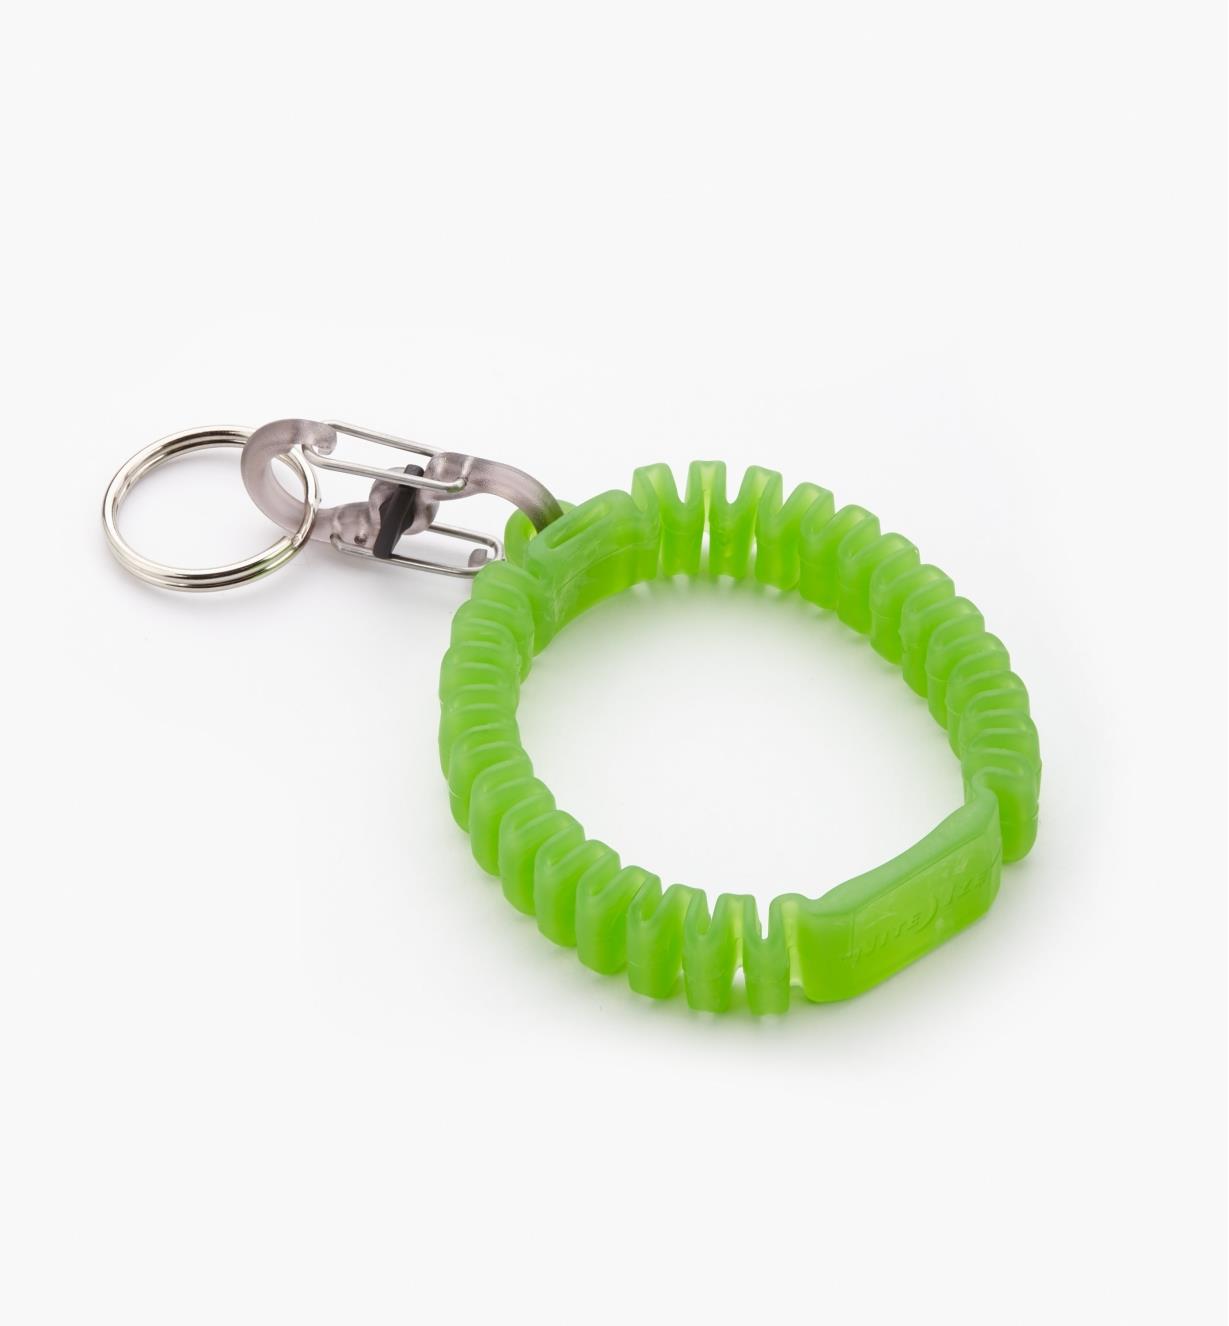 68K0942 - Green Key Band-It Wristband